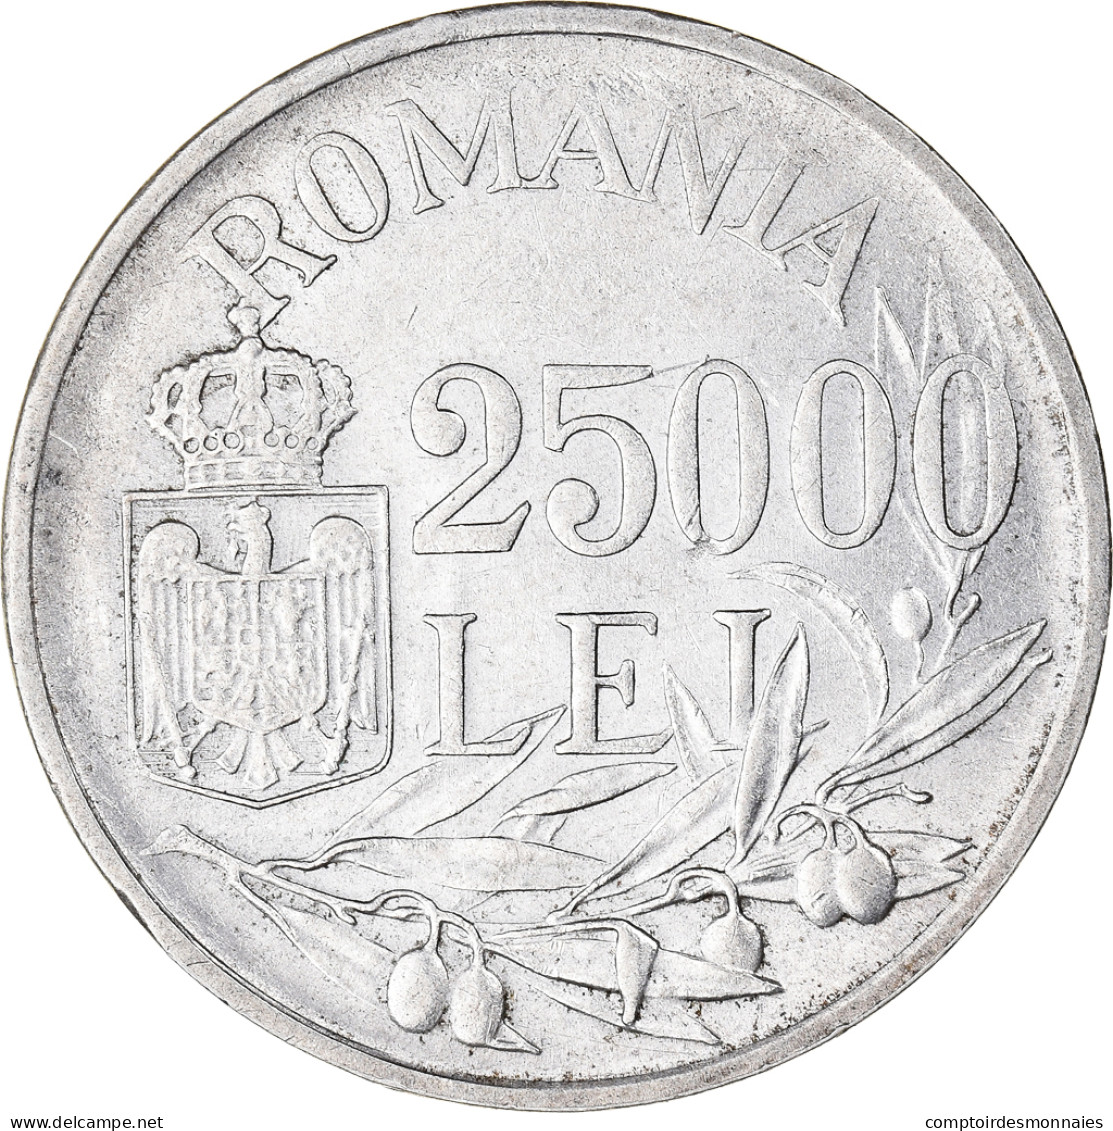 Monnaie, Roumanie, Mihai I, 25000 Lei, 1946, SUP, Argent, KM:70 - Roumanie